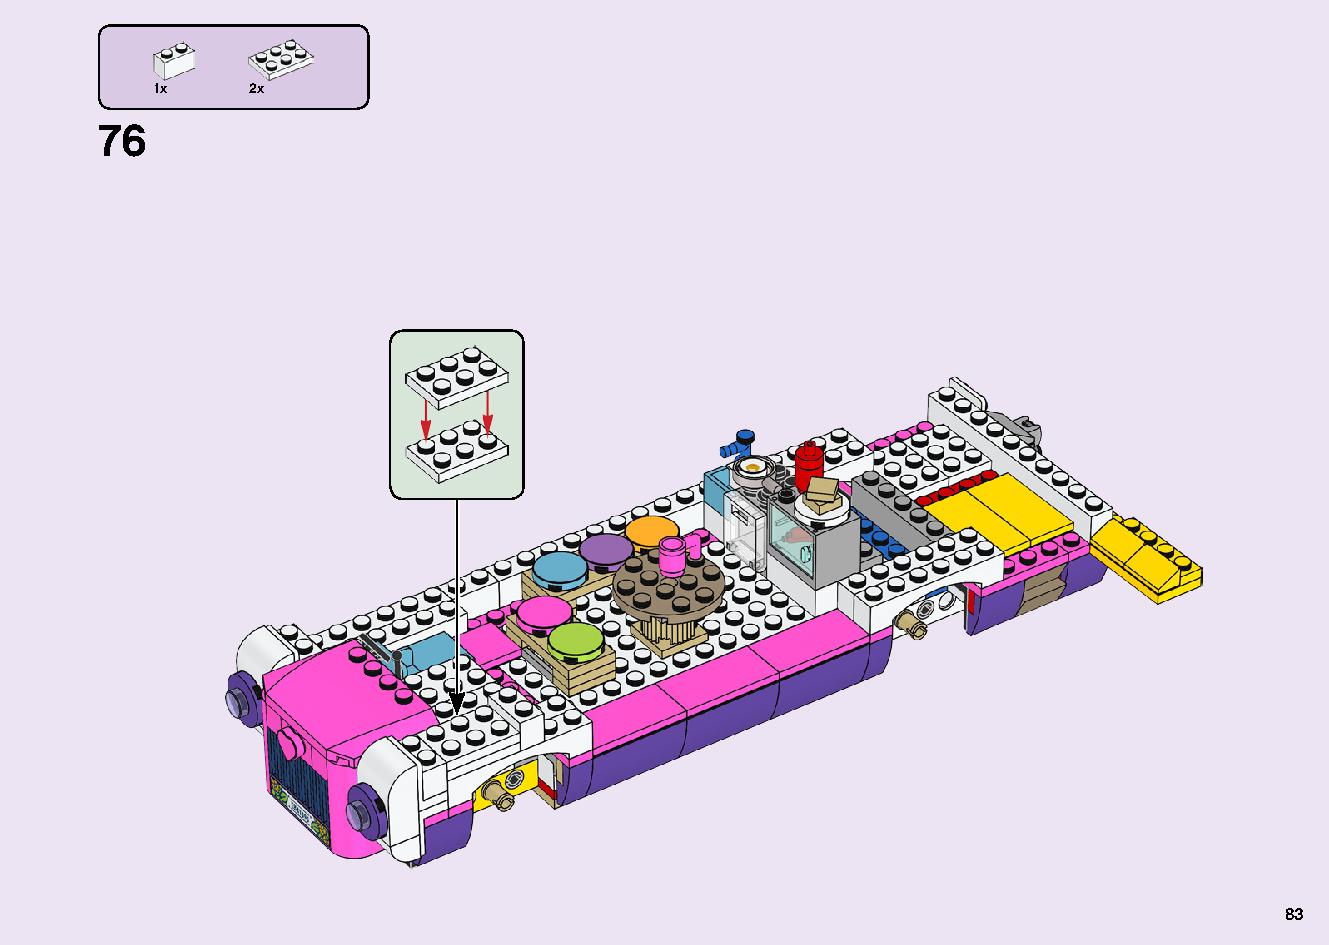 フレンズのうきうきハッピー・バス 41395 レゴの商品情報 レゴの説明書・組立方法 83 page